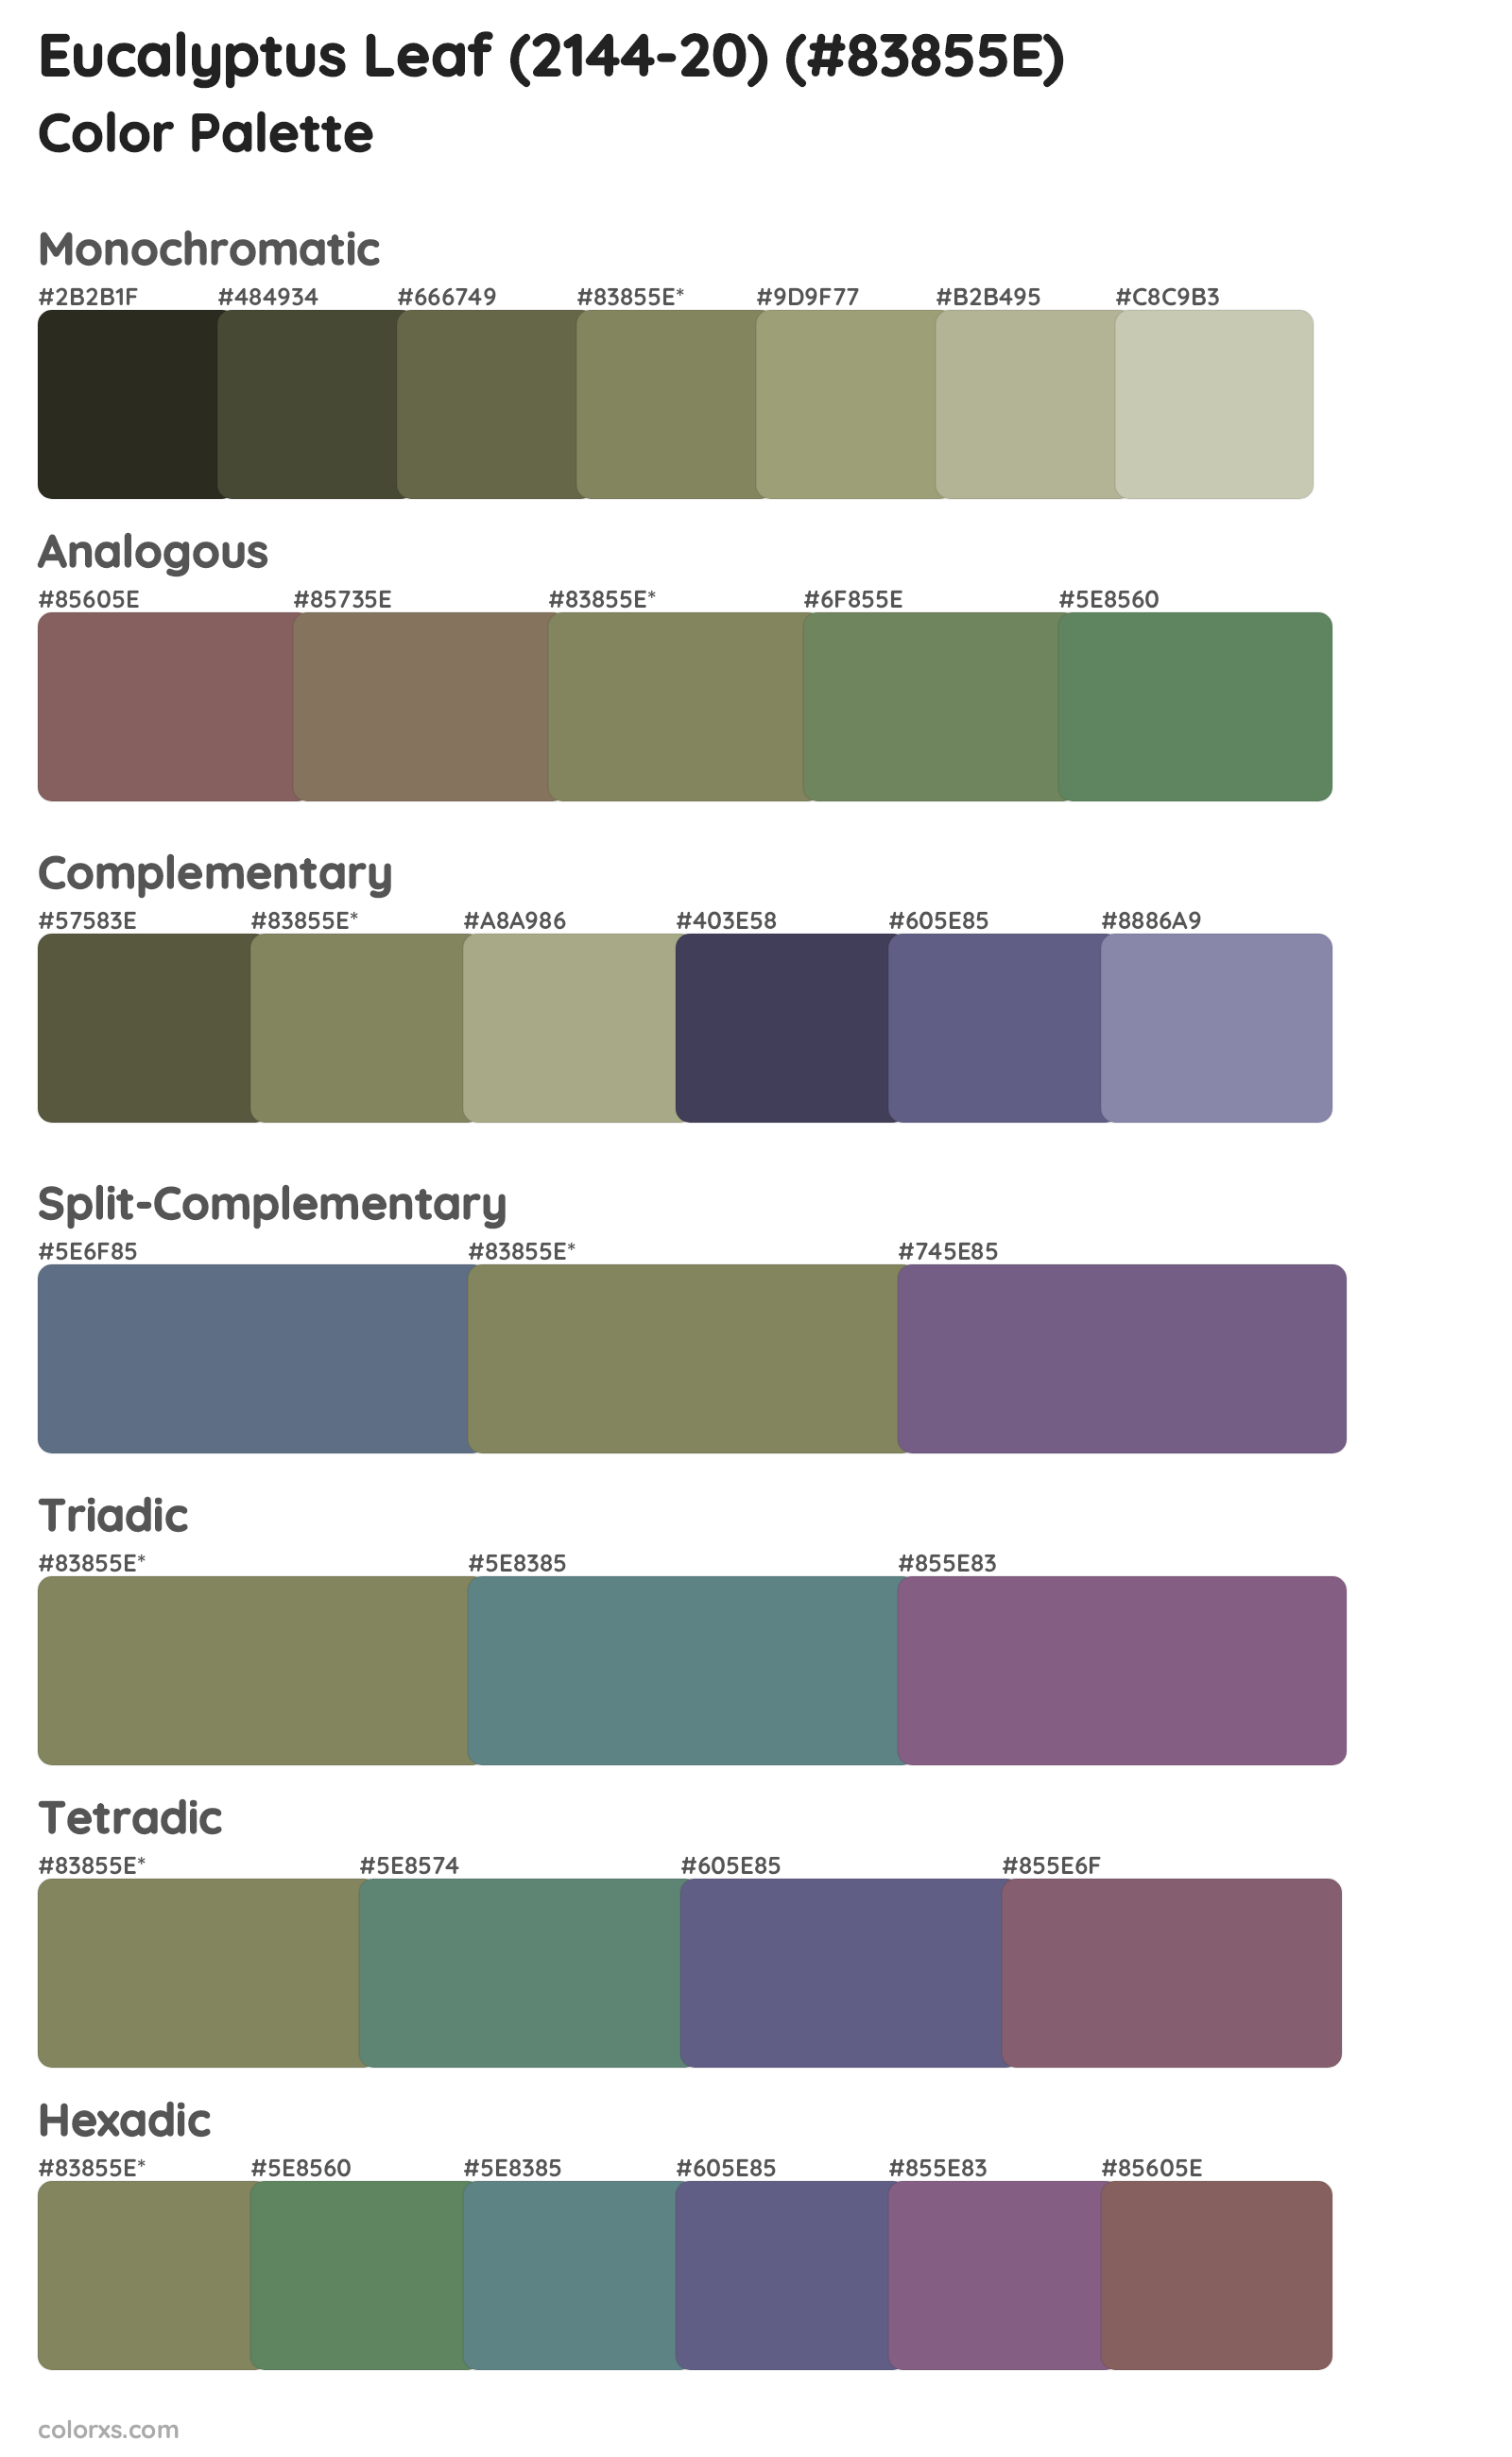 Eucalyptus Leaf (2144-20) Color Scheme Palettes